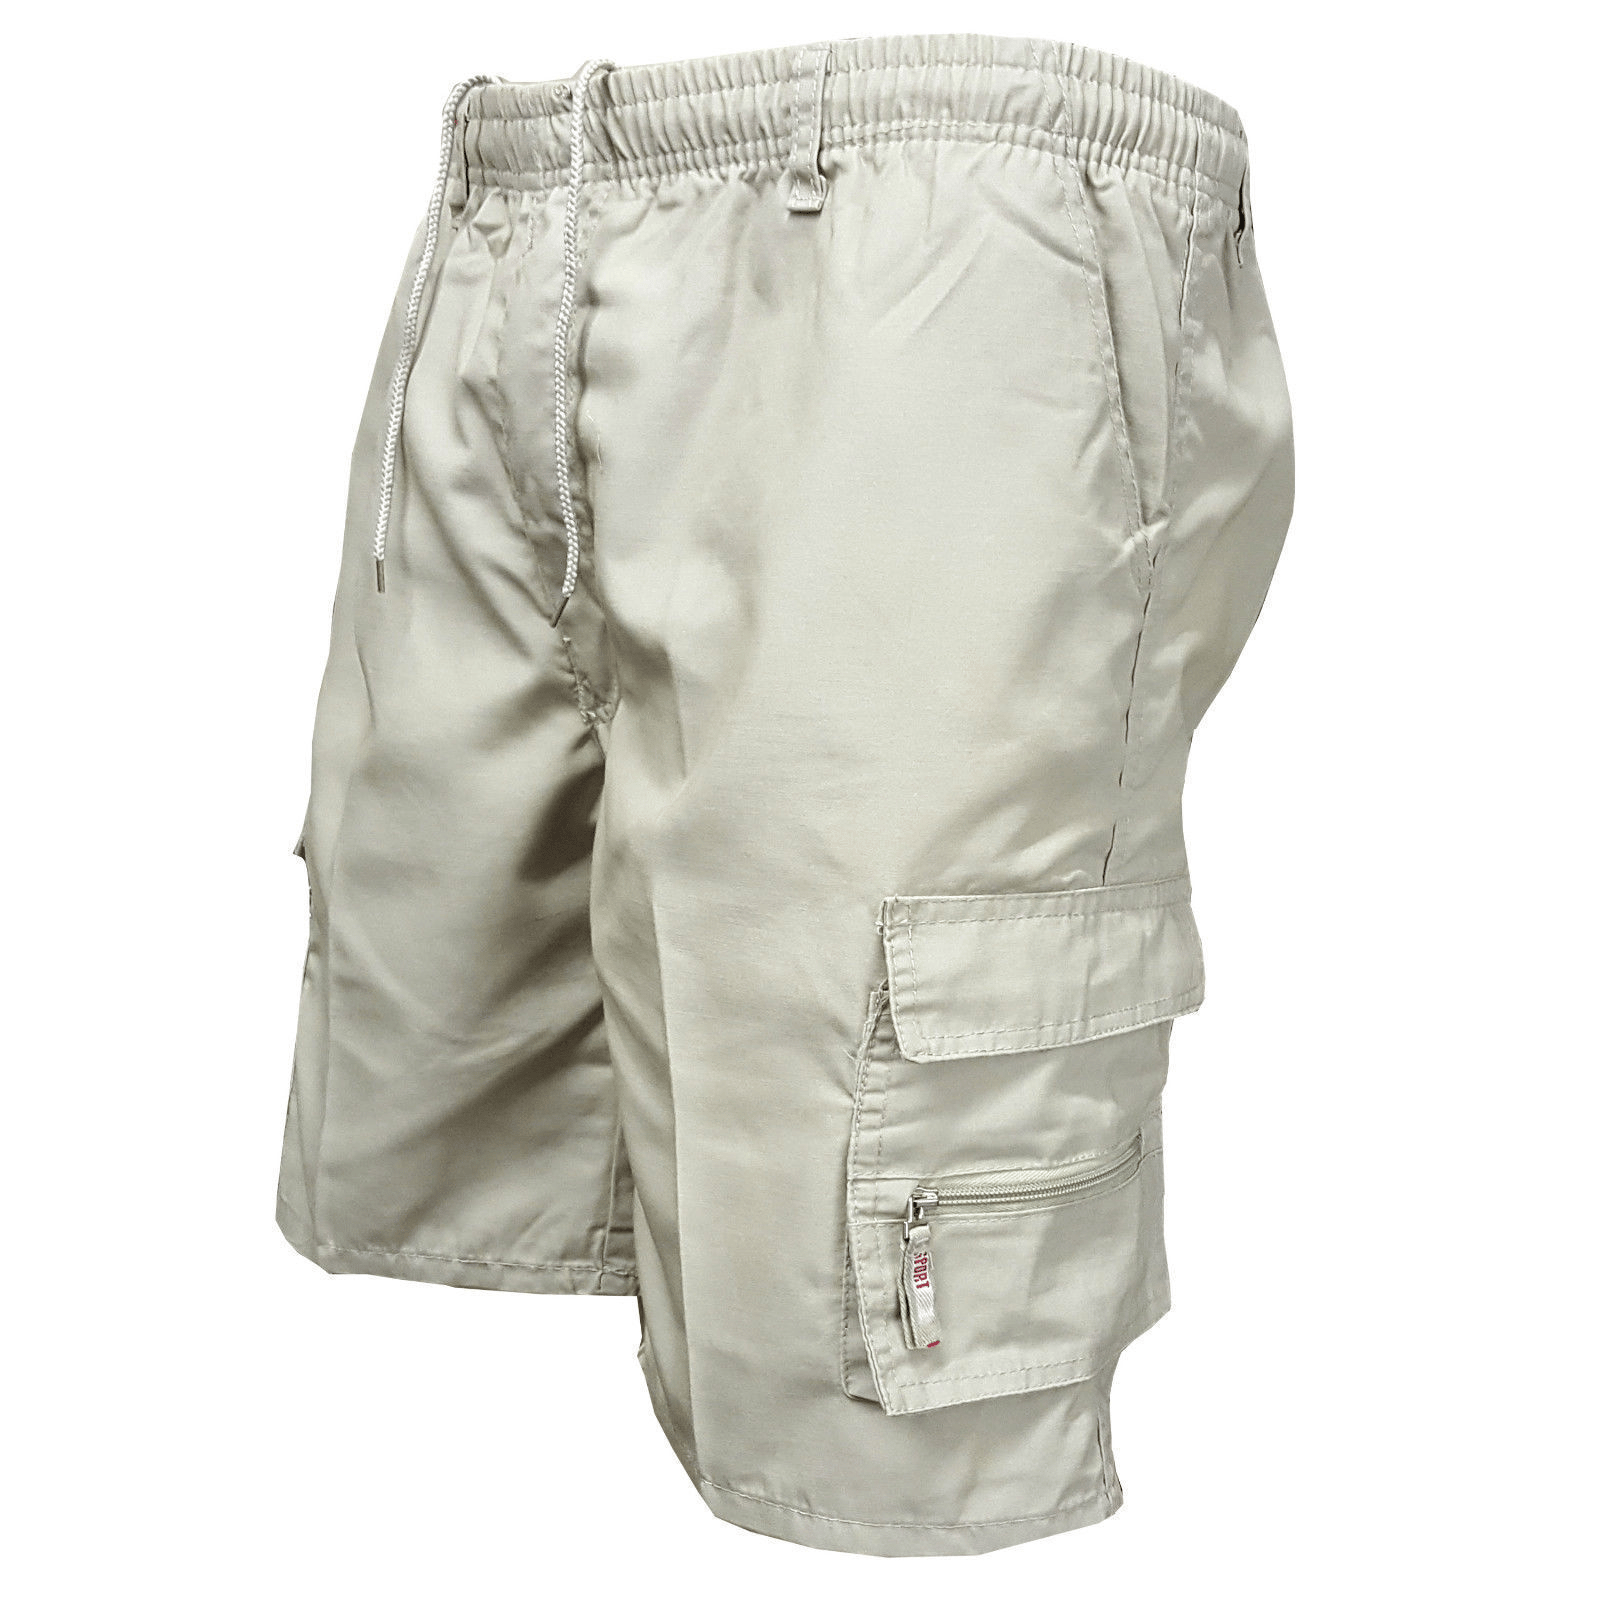 Men's Zipper Pockets Hiking Athletic Running Shorts